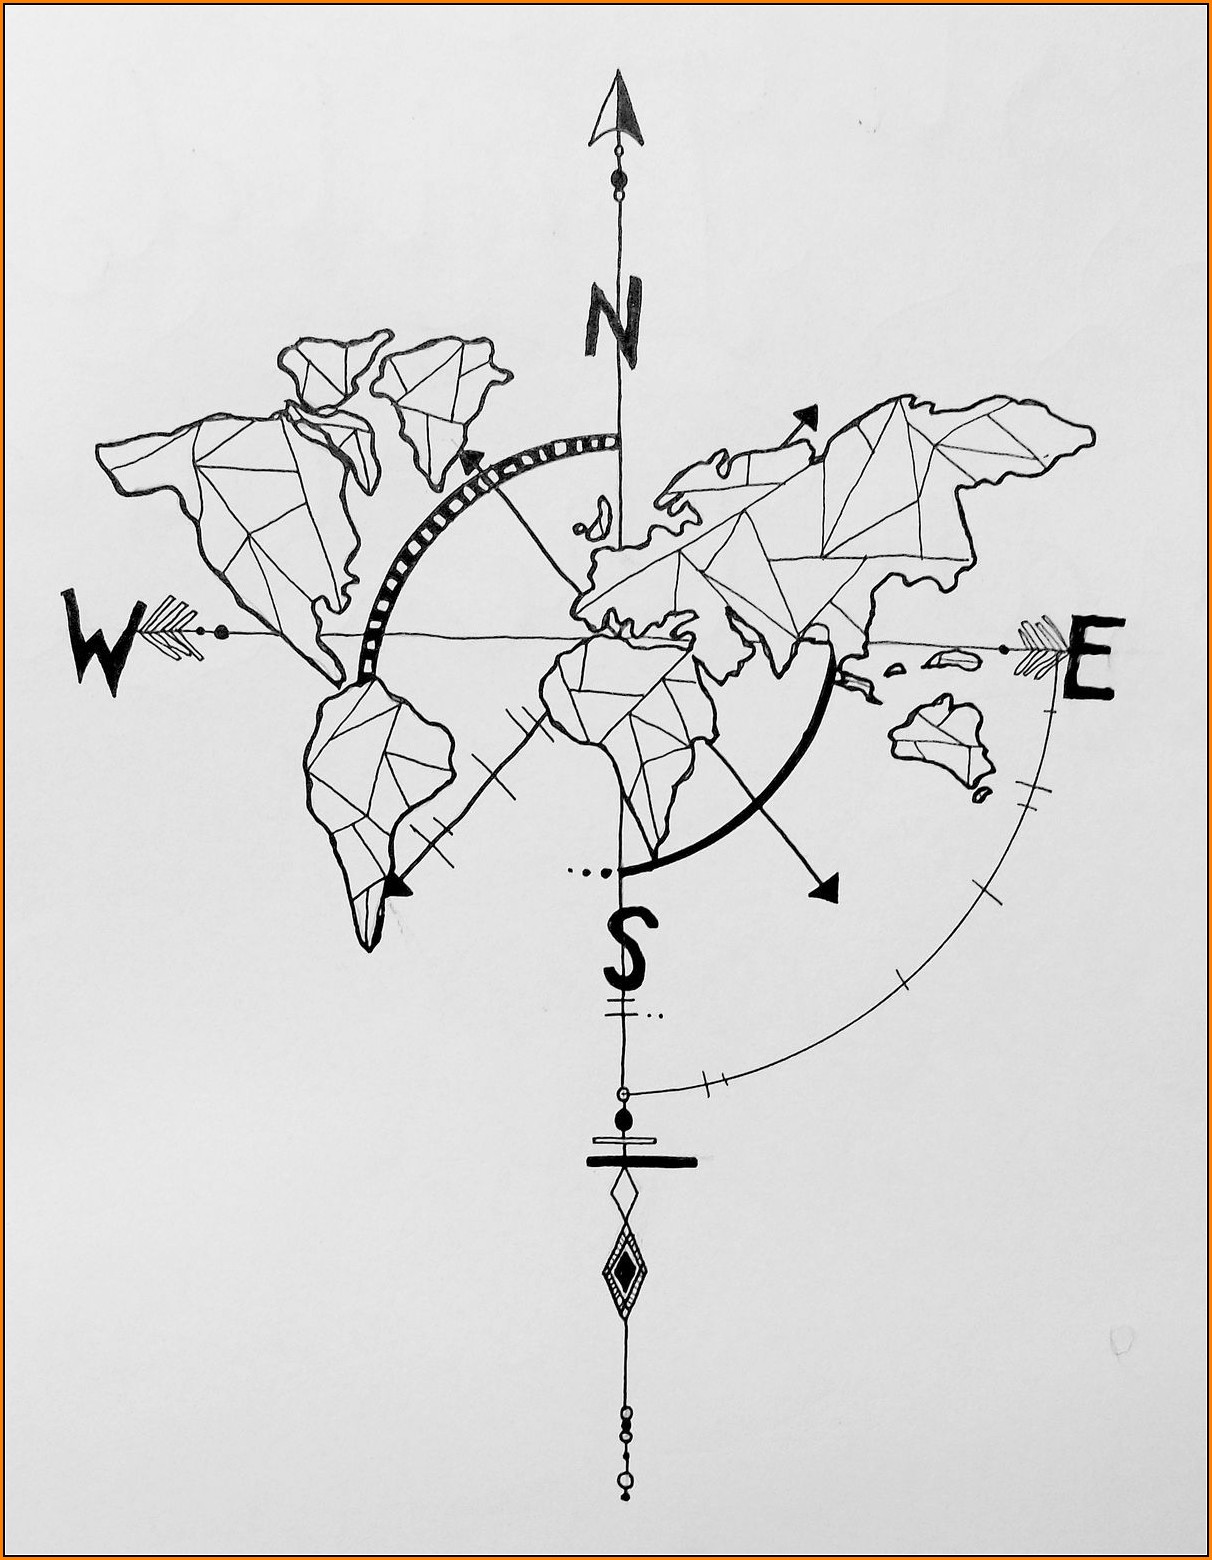 Geometric World Map Tattoo